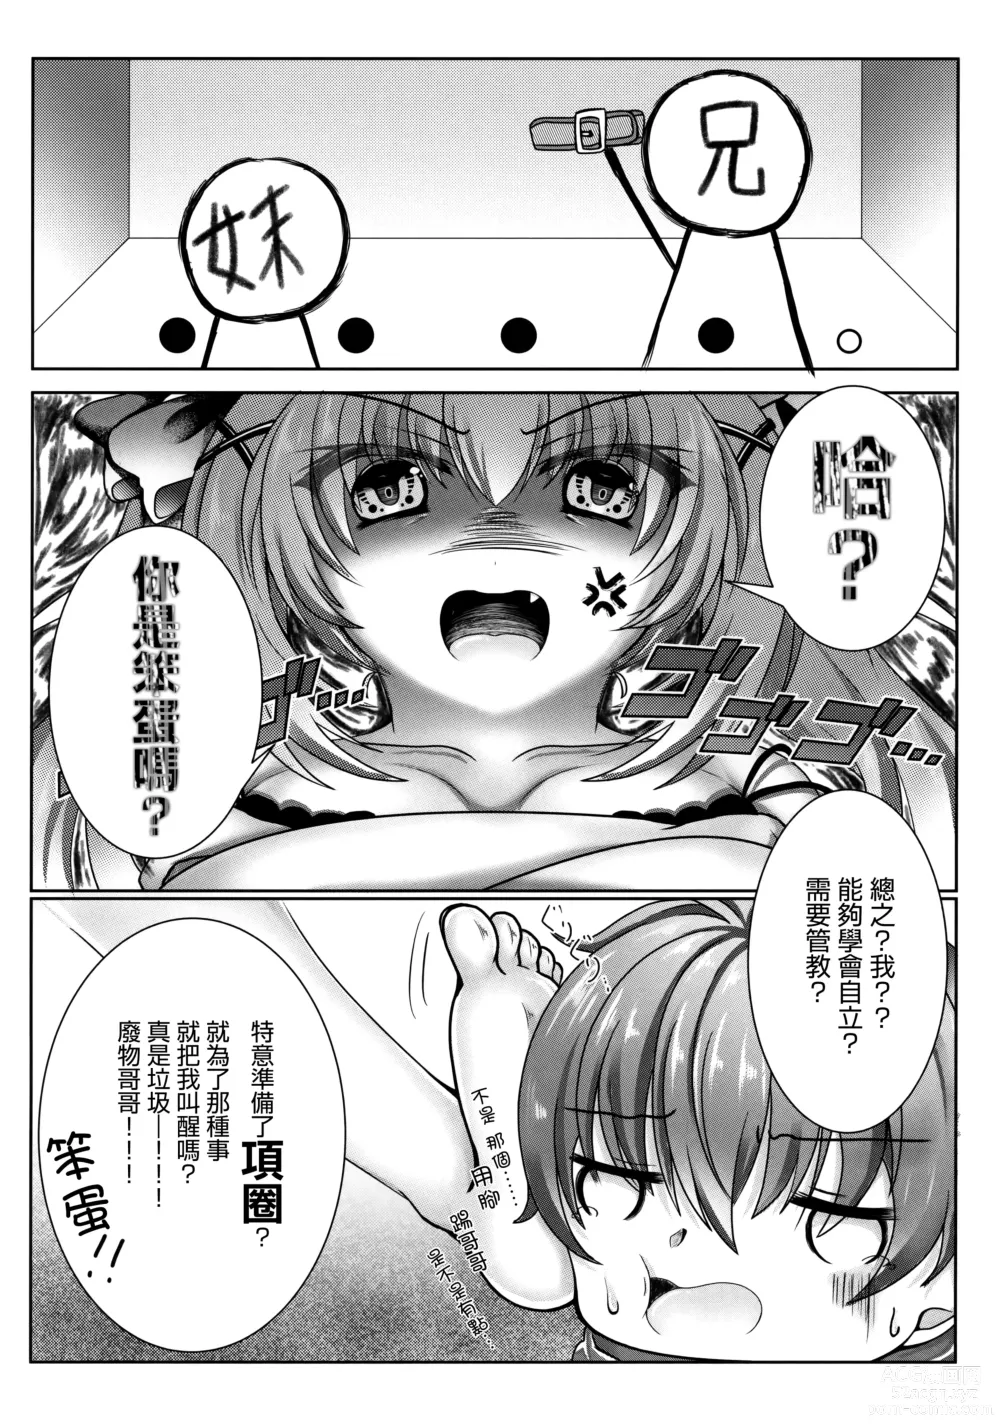 Page 5 of doujinshi Onii-chan wa Imouto o Shitsuketai